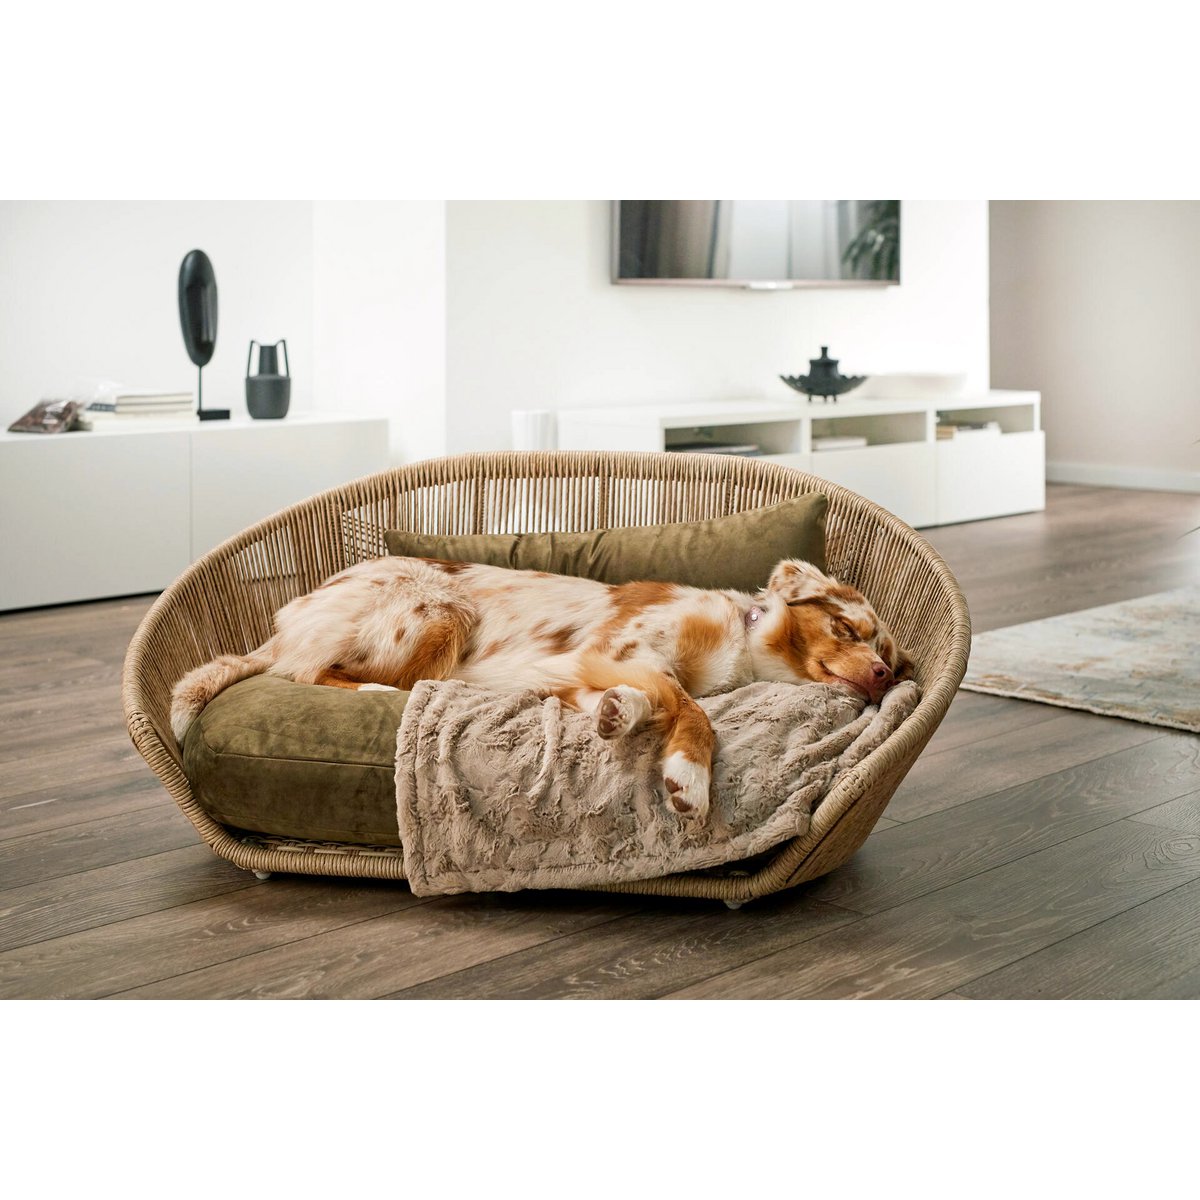 VOGUE Design hondenmand - Collectie OXFORD
Het hondenbed VOGUE van LABONI is een van de meest stijlvolle en comfortabele bedden die er zijn. Het is ontworpen met oog voor vakmanschap, doordacht design en hooLABONIwafwafVOGUE Design hondenmand - Collectie OXFORD